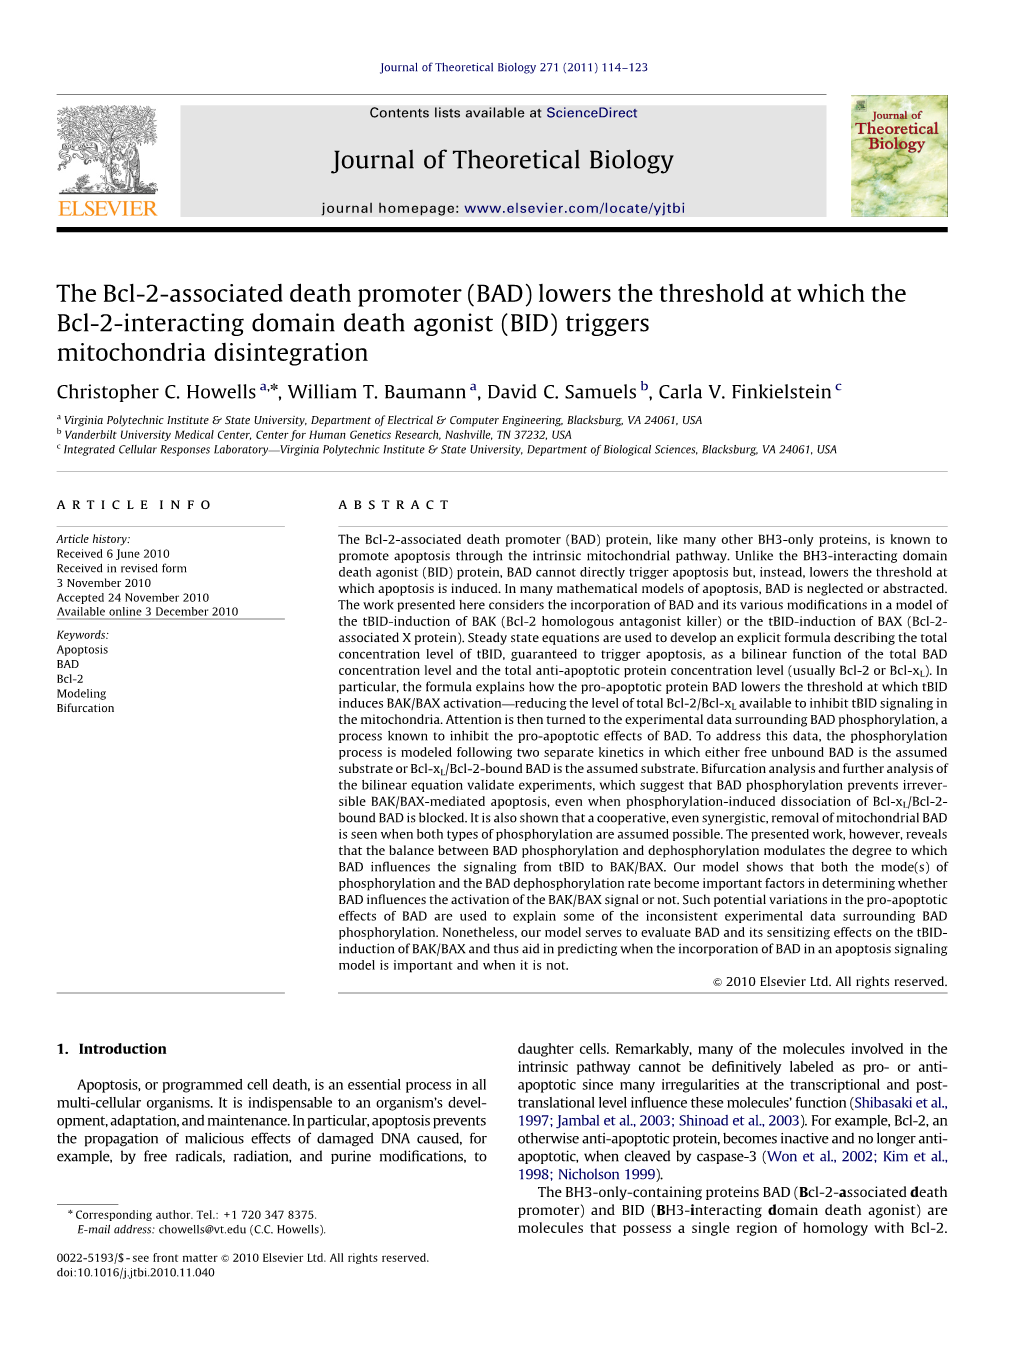 BID) Triggers Mitochondria Disintegration